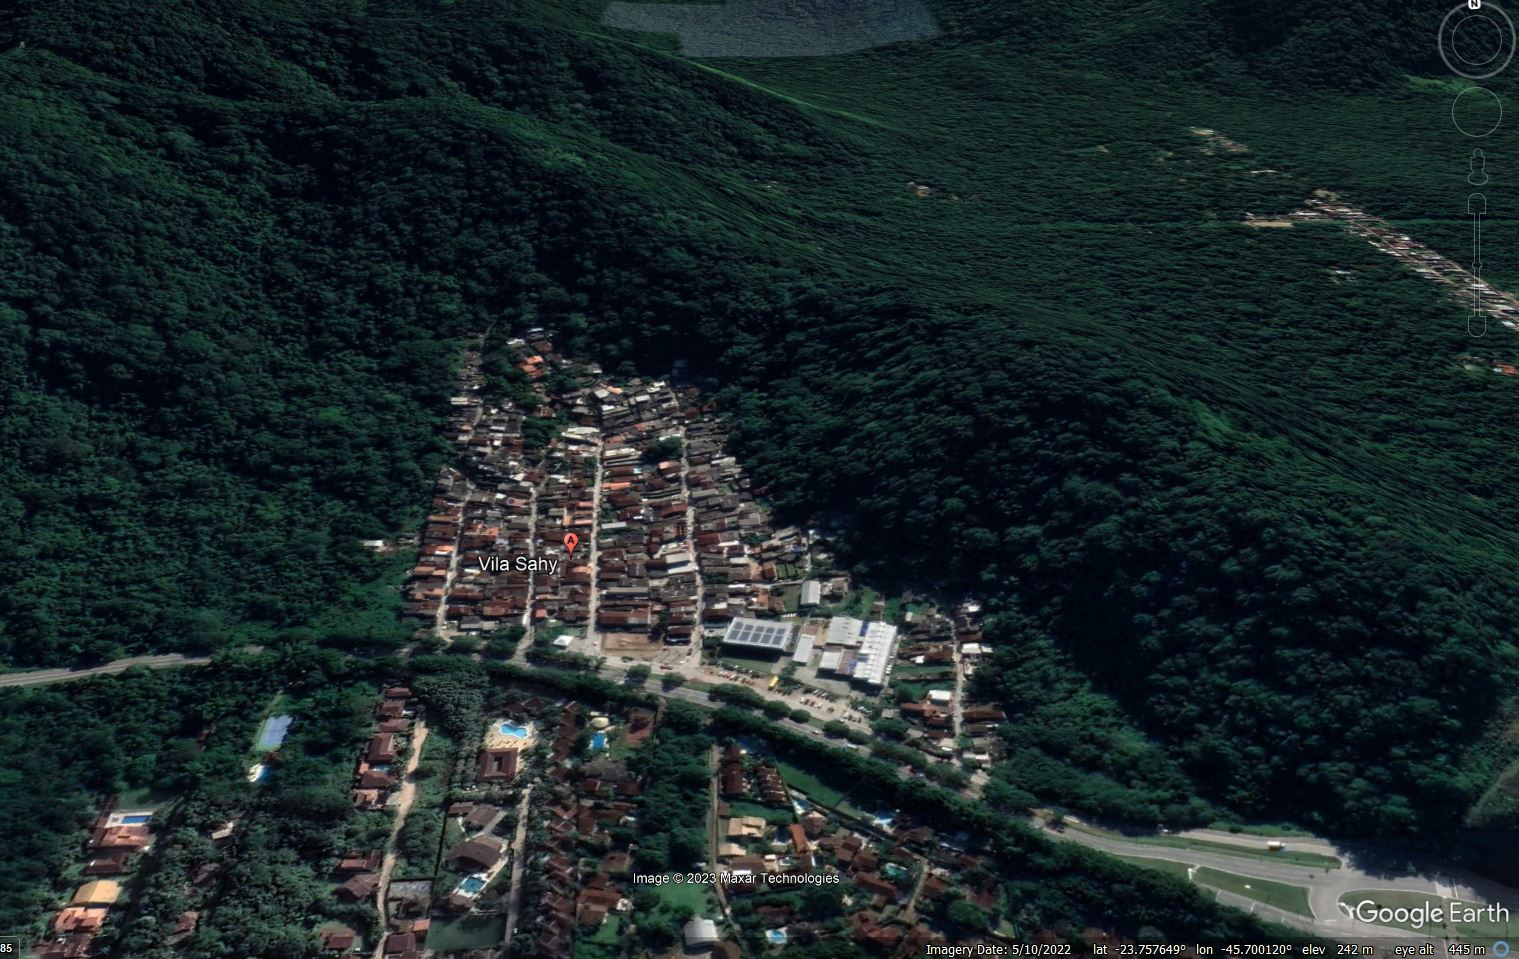 Google Earth image of Vila Sahy in São Sebastião, São Paolo before the recent landslides.